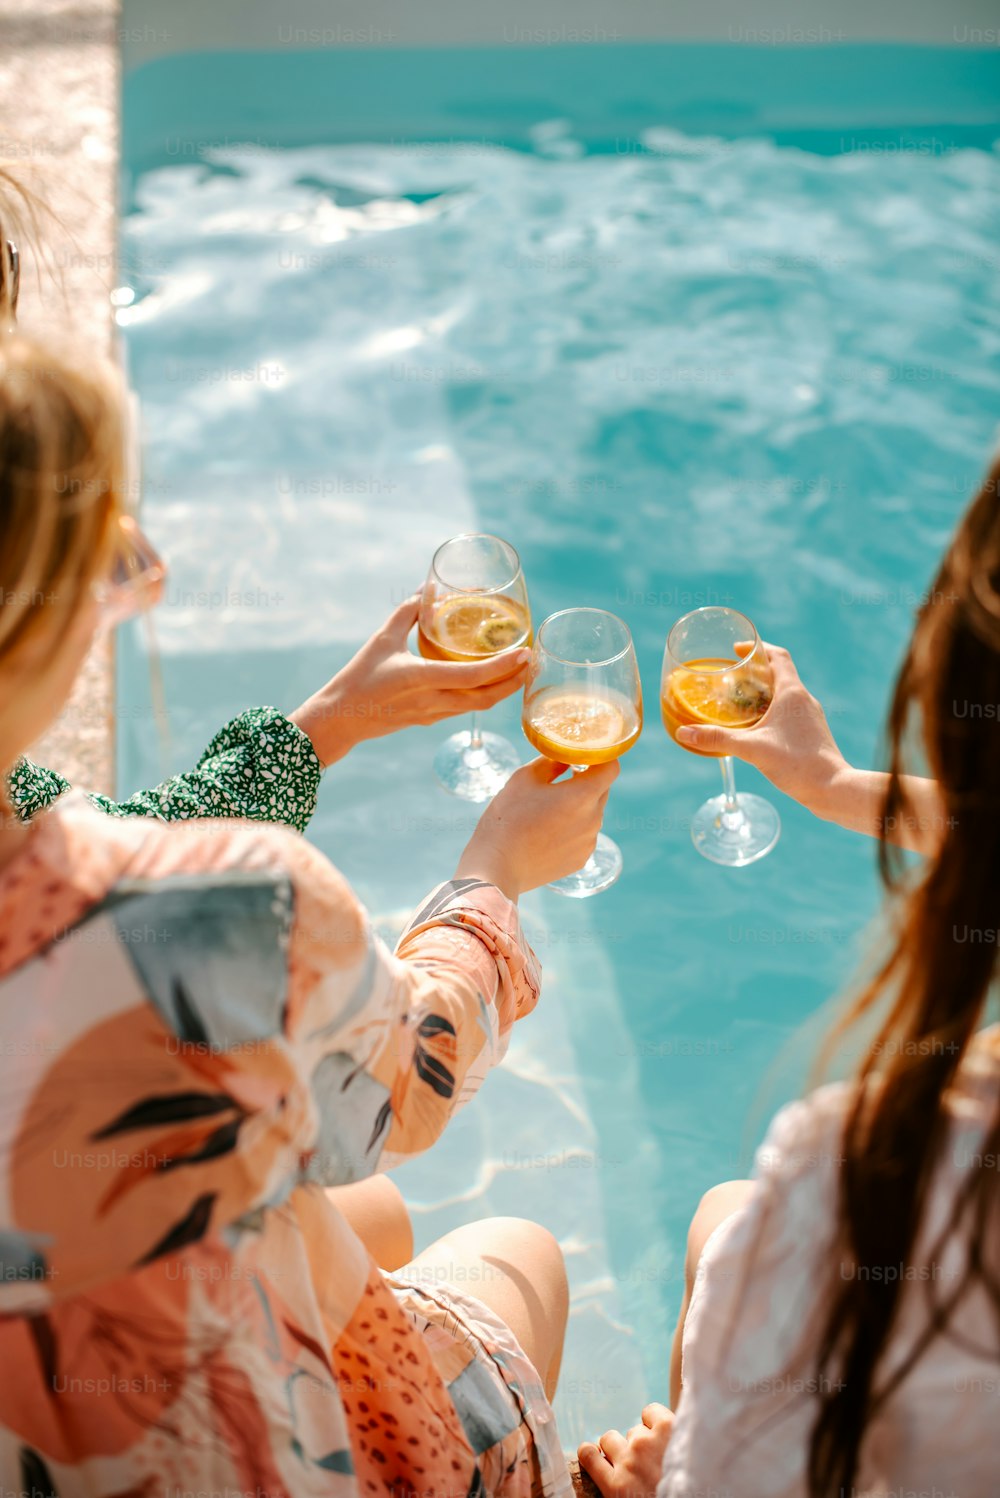 와인 잔을 들고 수영장 옆에 앉아있는 한 무리의 여성들